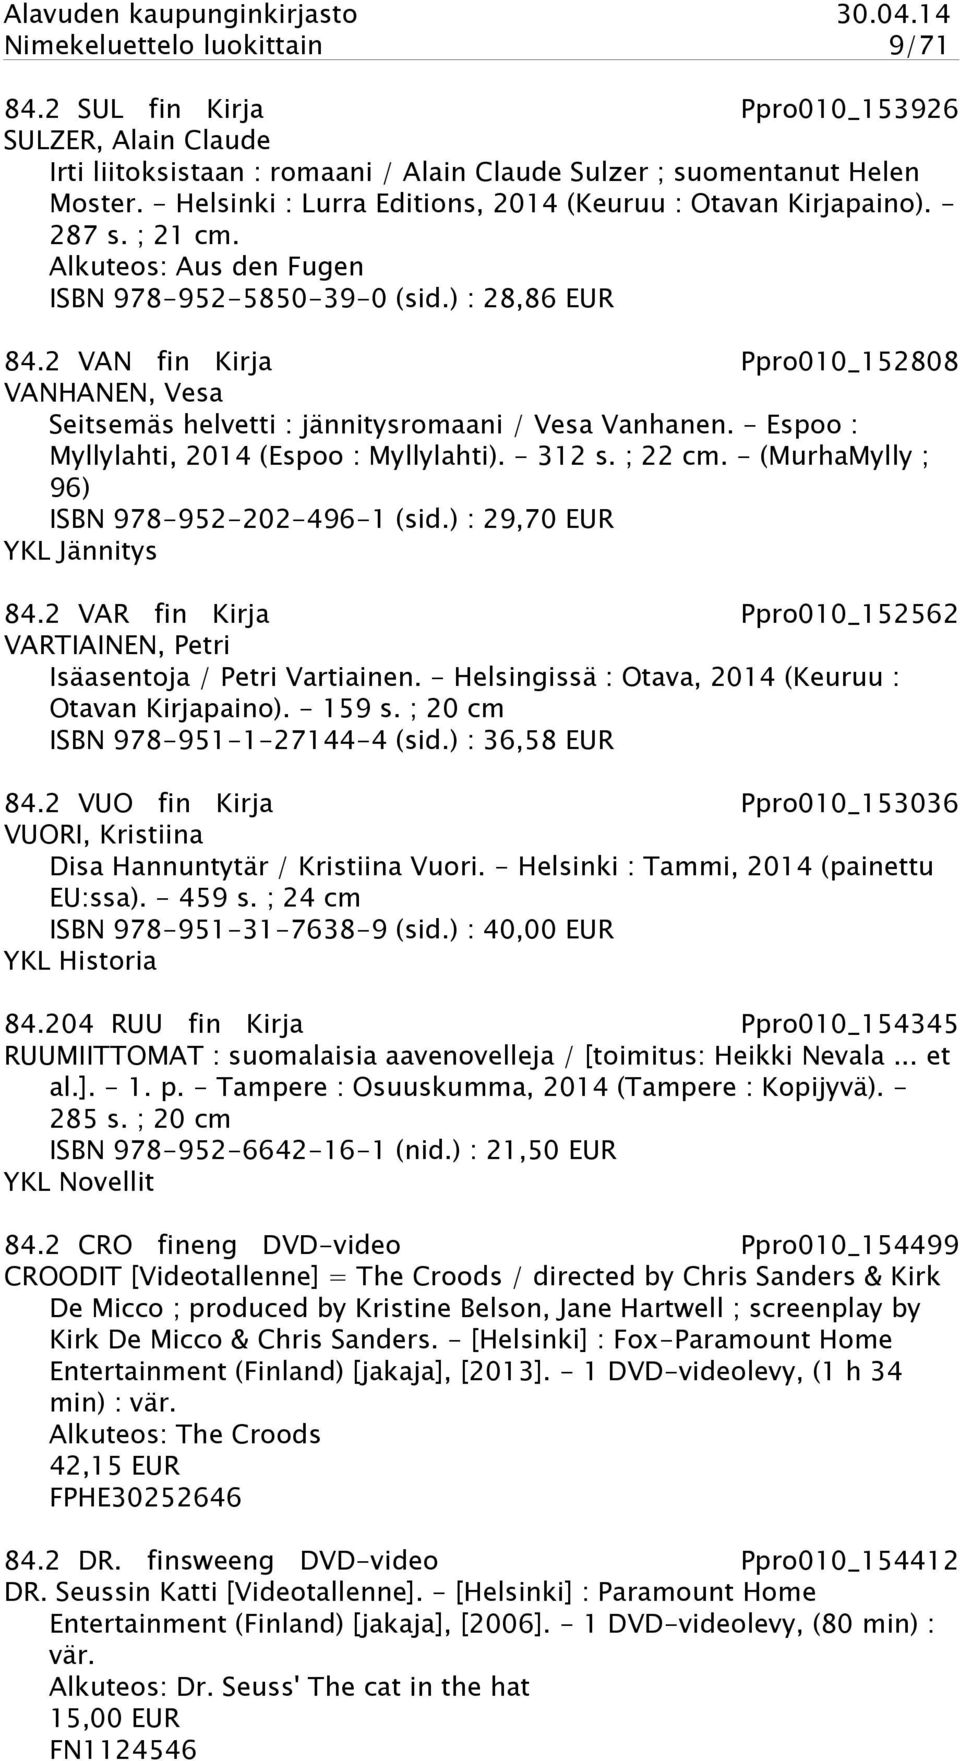 2 VAN fin Kirja Ppro010_152808 VANHANEN, Vesa Seitsemäs helvetti : jännitysromaani / Vesa Vanhanen. - Espoo : Myllylahti, 2014 (Espoo : Myllylahti). - 312 s. ; 22 cm.